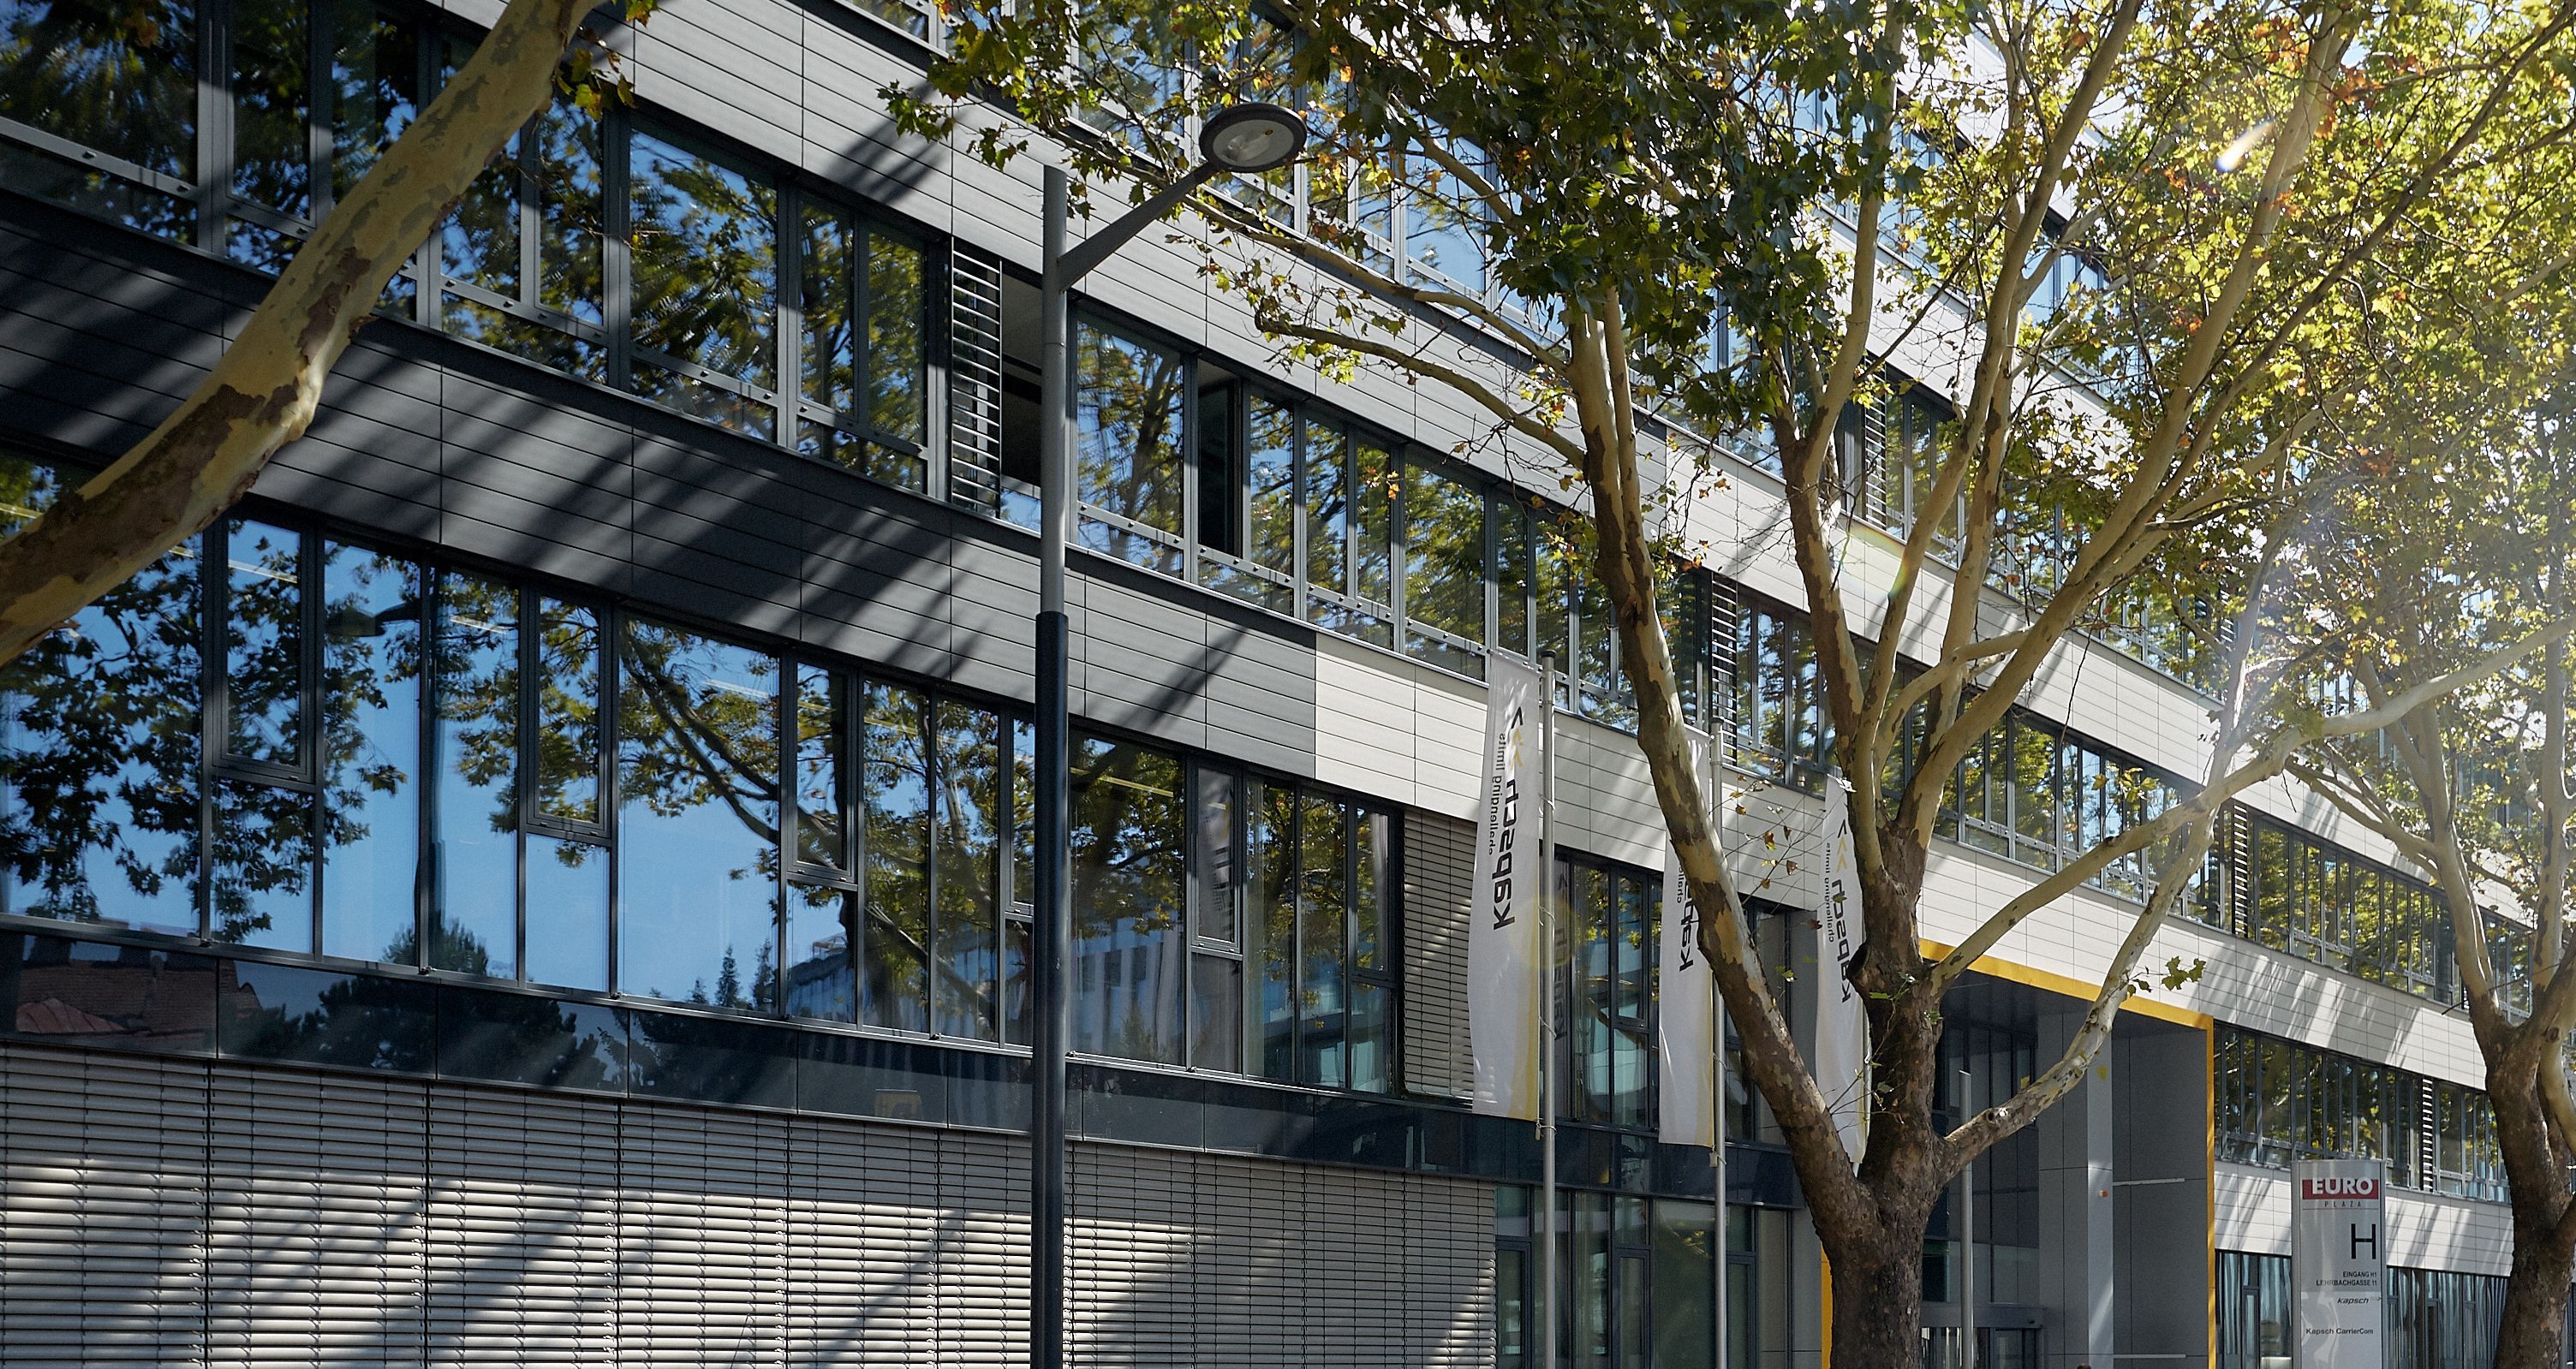 Foto: durch Bäume beschattete Alu-Glasfassade eines modernen Bürogebäudes; vor dem Eingang drei Fahnenmasten der Firma Kapsch und ein Pylon mit dem Buchstaben „H“; im Vordergrund parkende Autos und Motorräder 